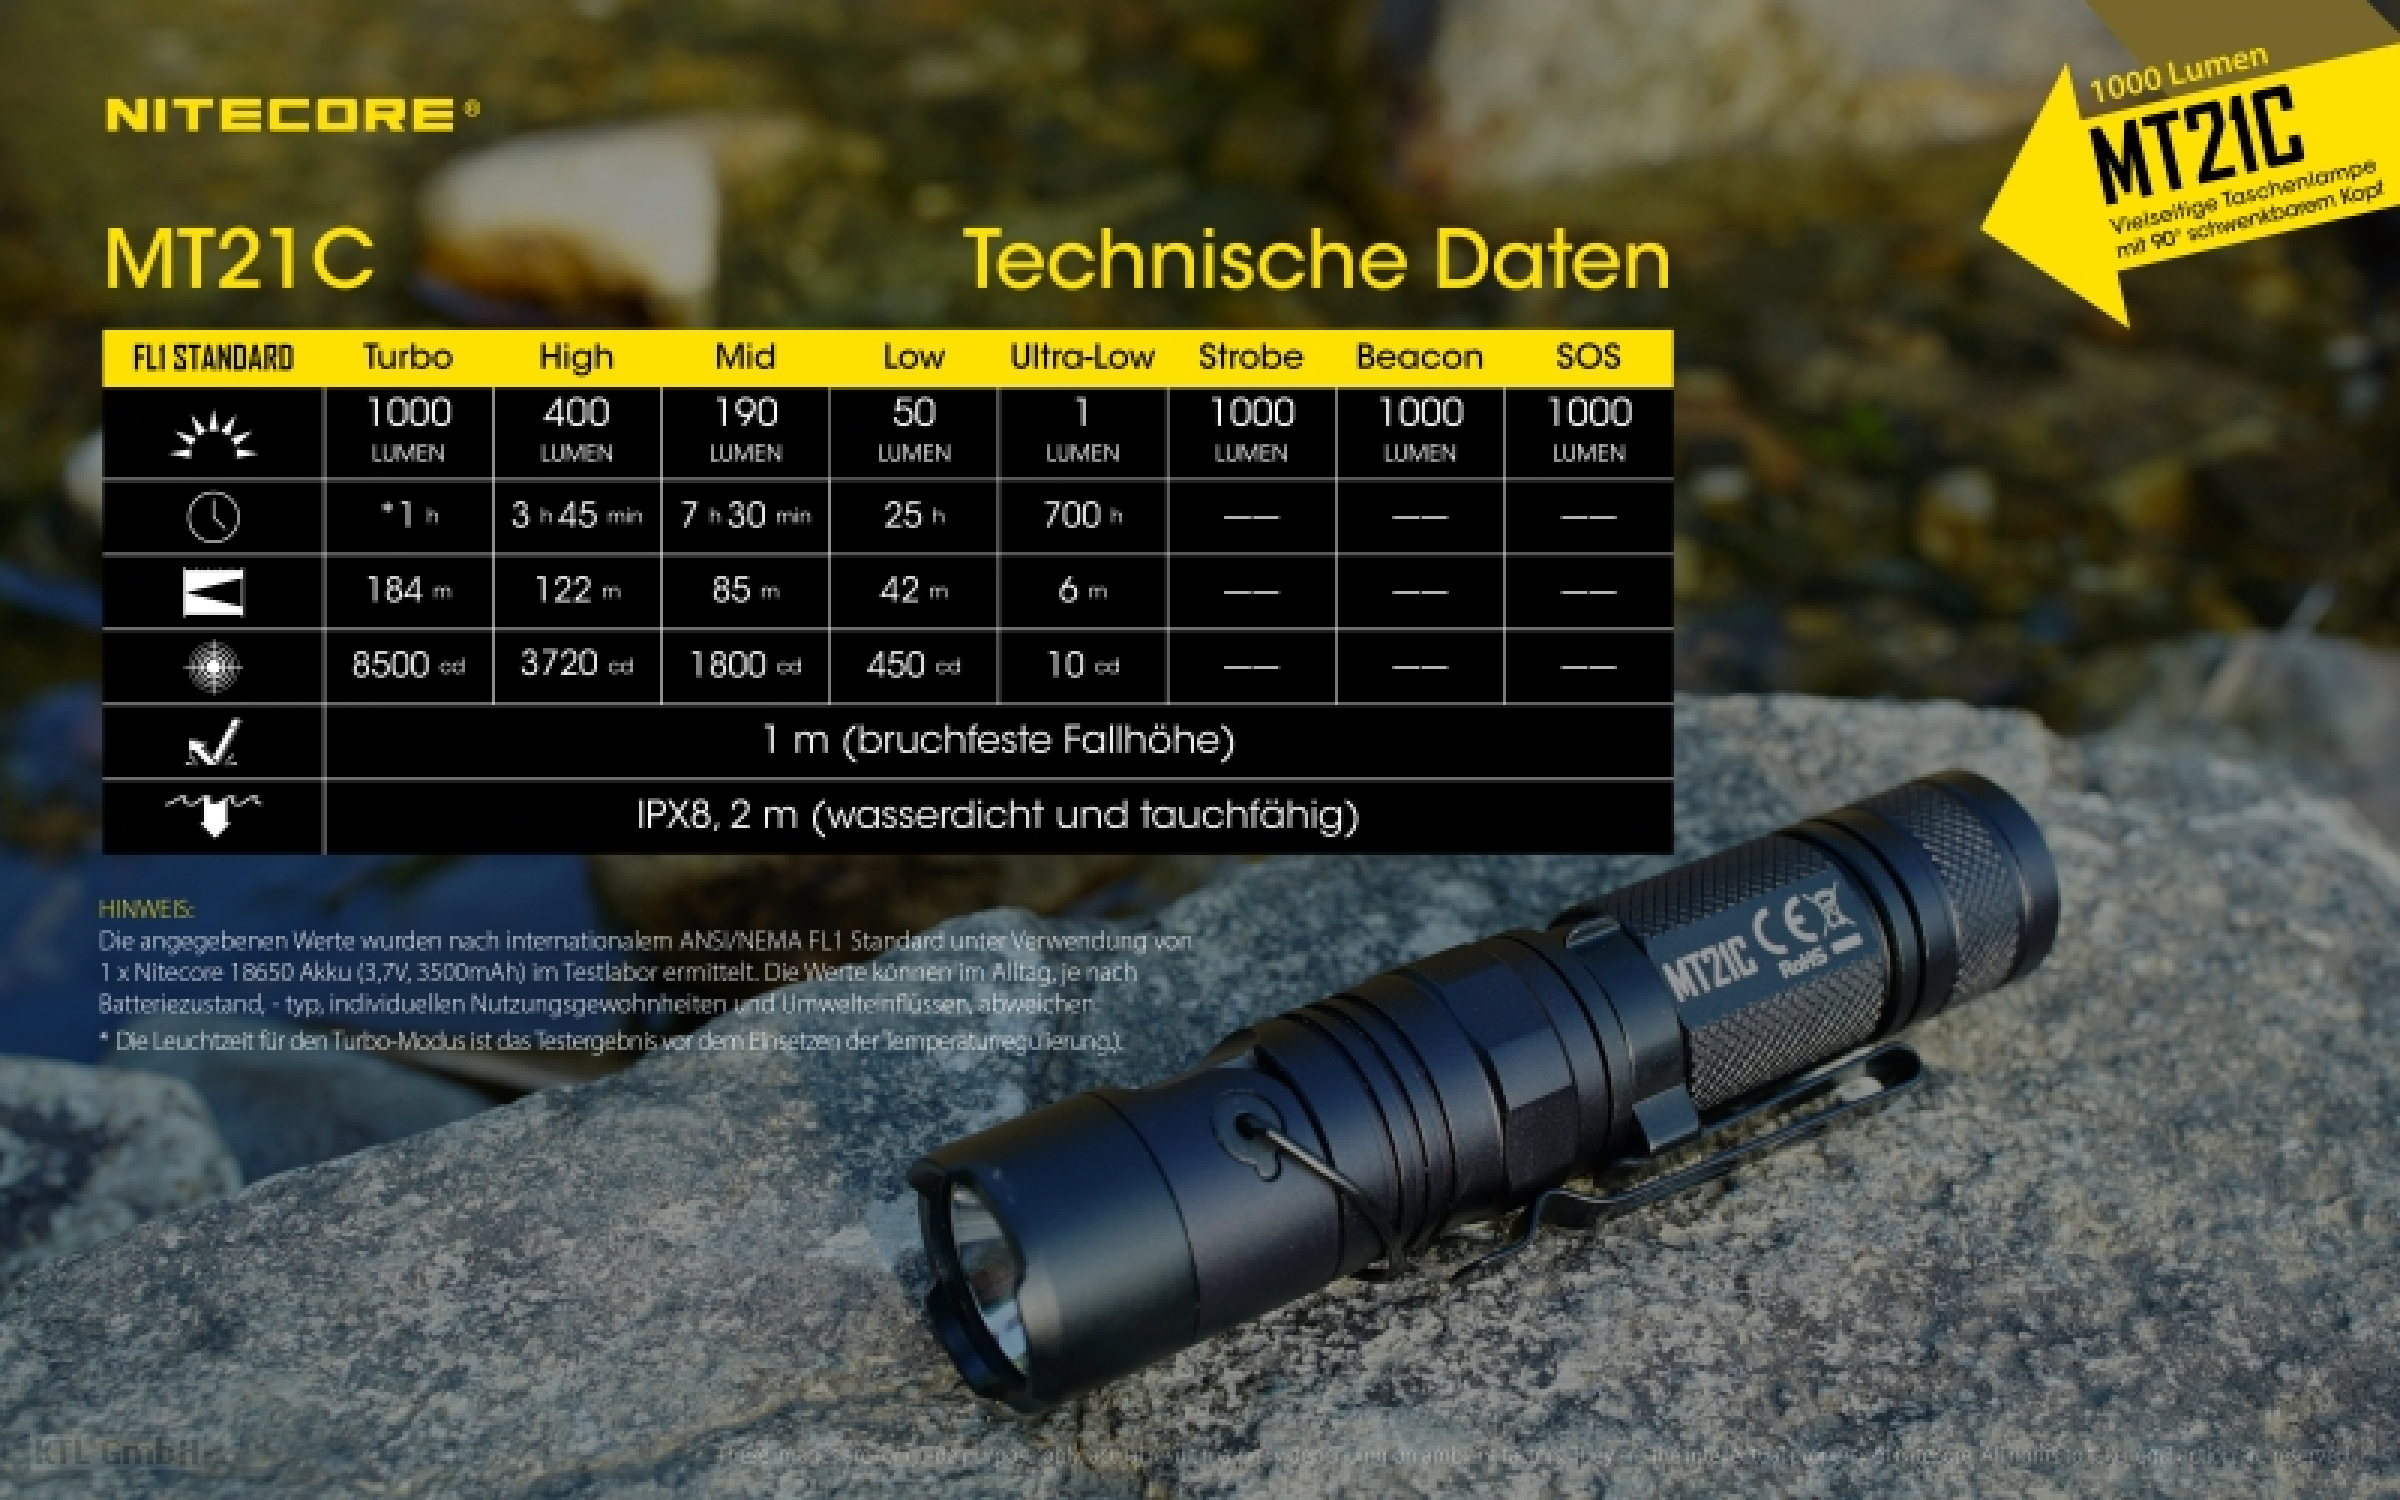 Nitecore Pro Taschenlampe MT21C - 1000 Lumen